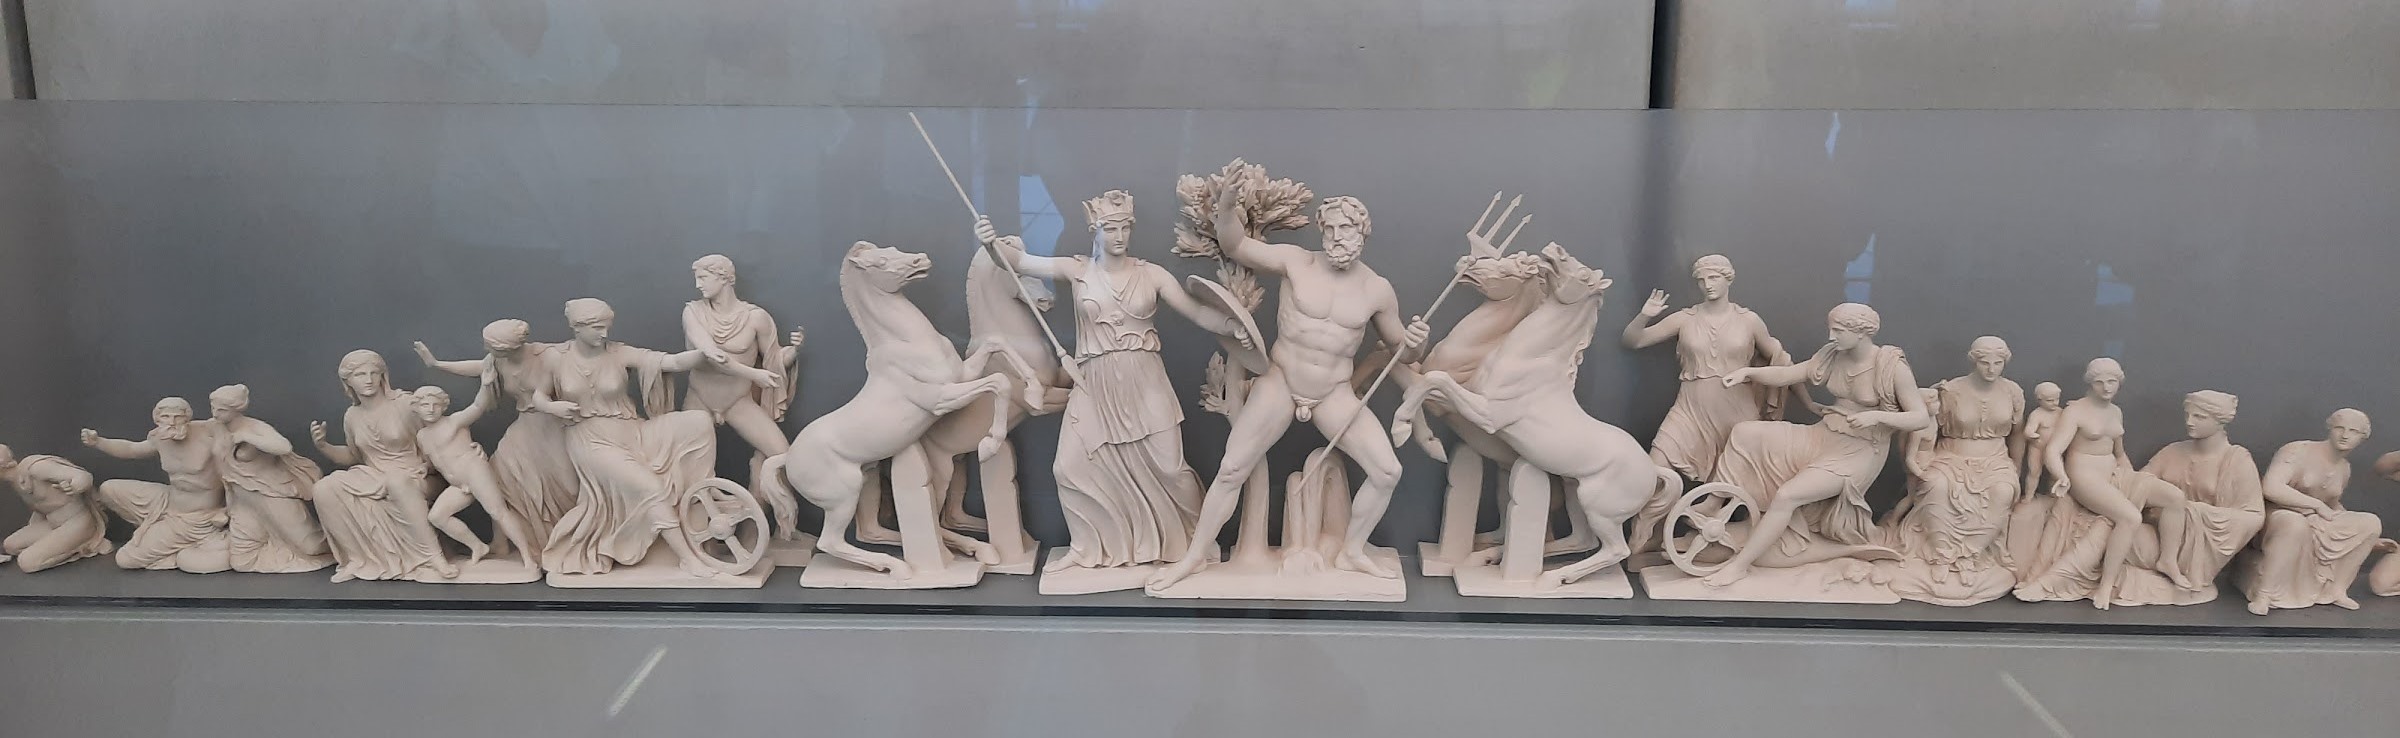 Reconstitution du fronton ouest du Parthénon d'après le dessin de K. Schwerzek. exposée au Musée de l'Acropole, Athènes, Grèce. Photo © Daniel Desjardins